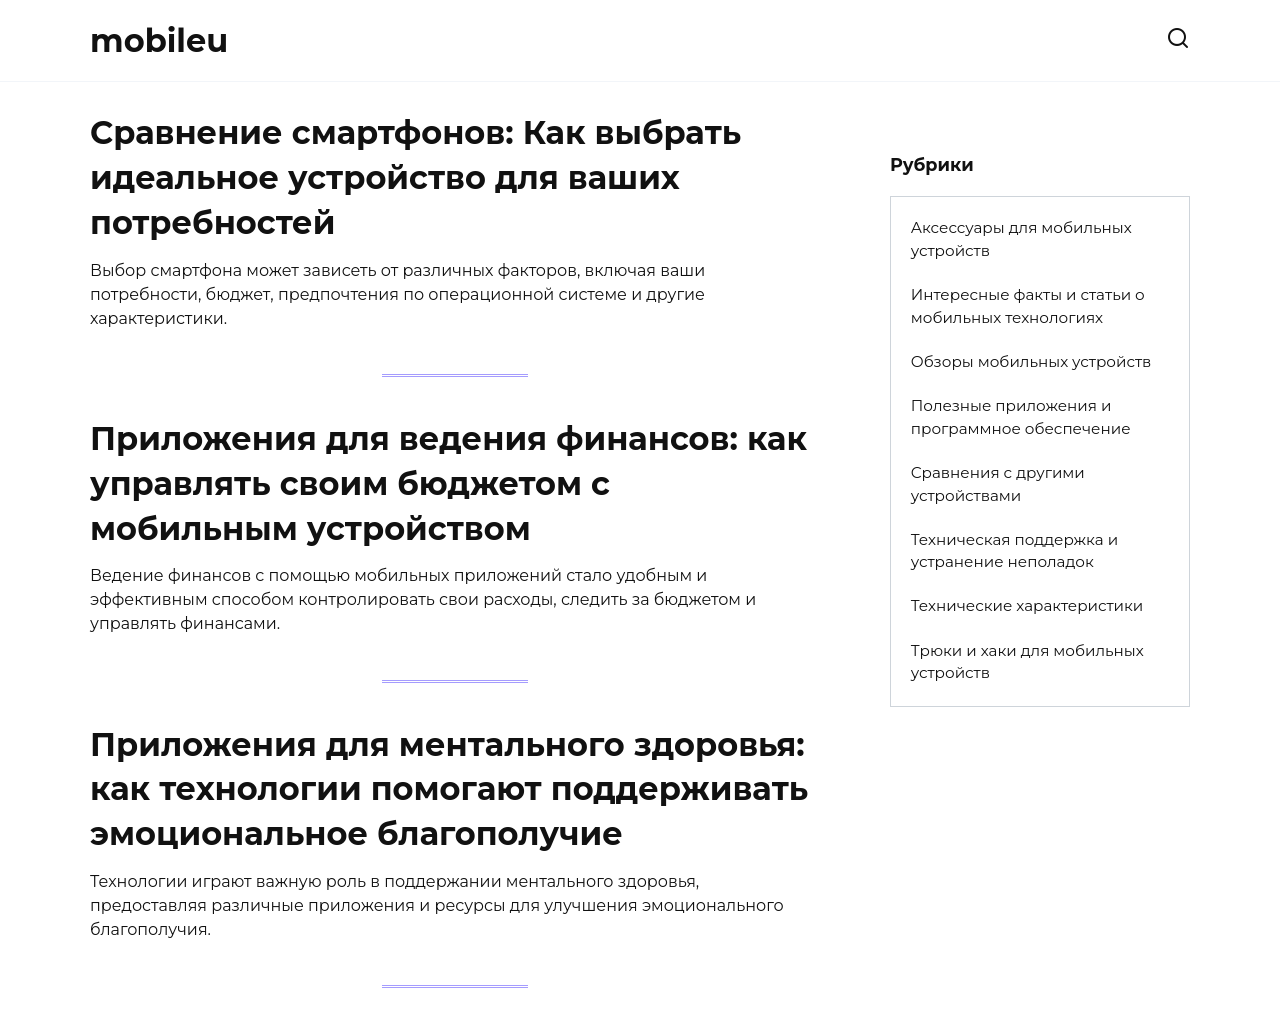 mobileu.ru